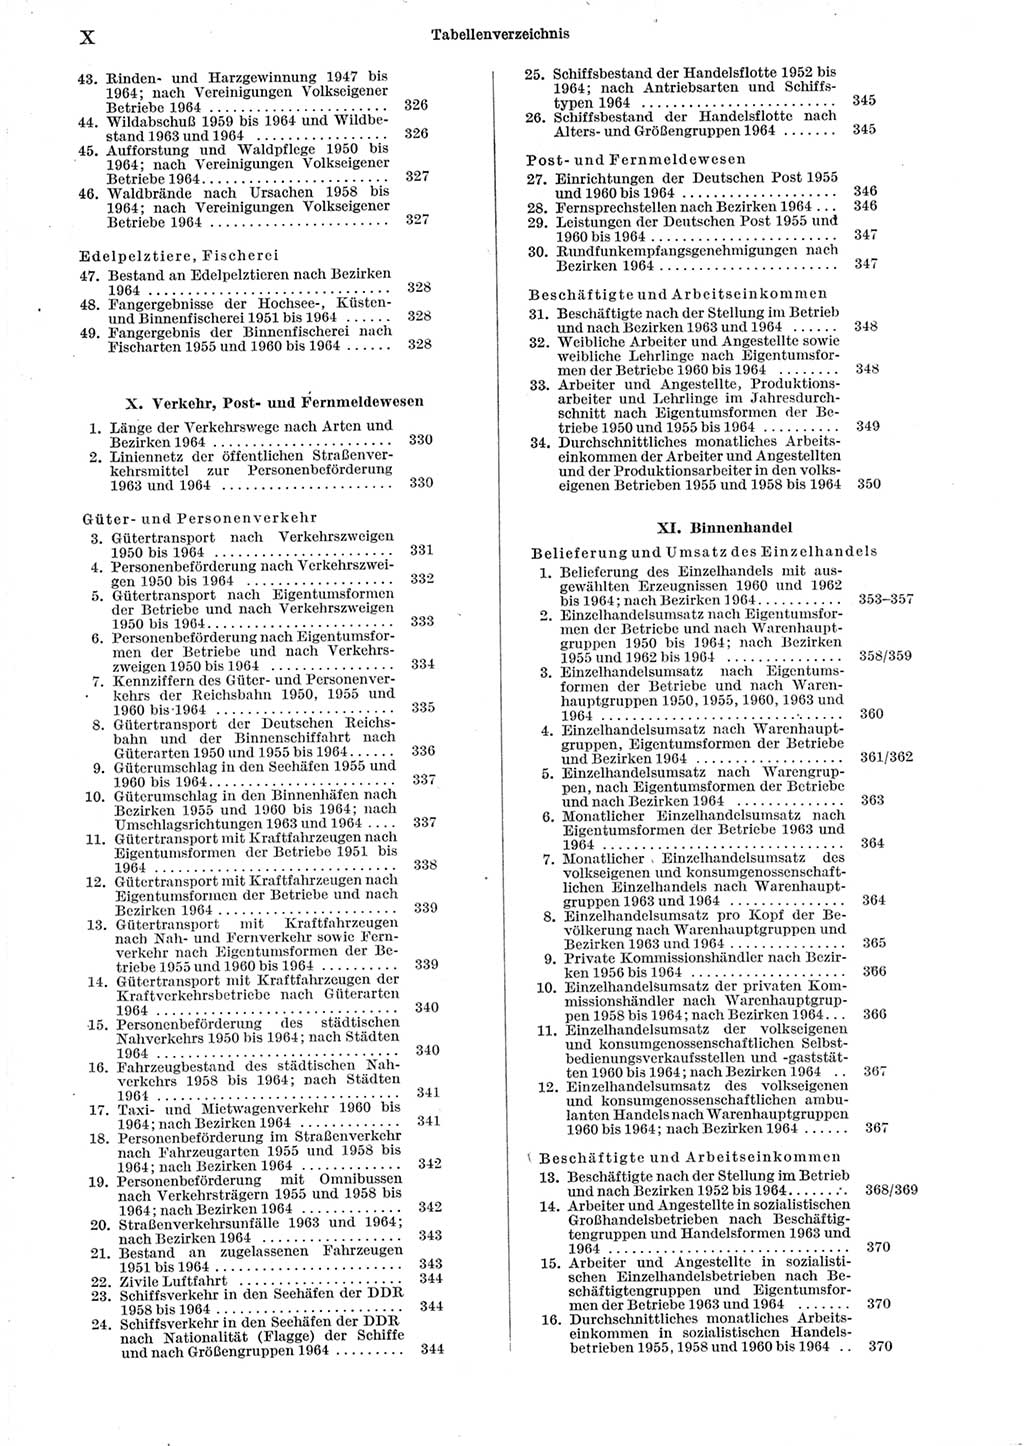 Statistisches Jahrbuch der Deutschen Demokratischen Republik (DDR) 1965, Seite 10 (Stat. Jb. DDR 1965, S. 10)